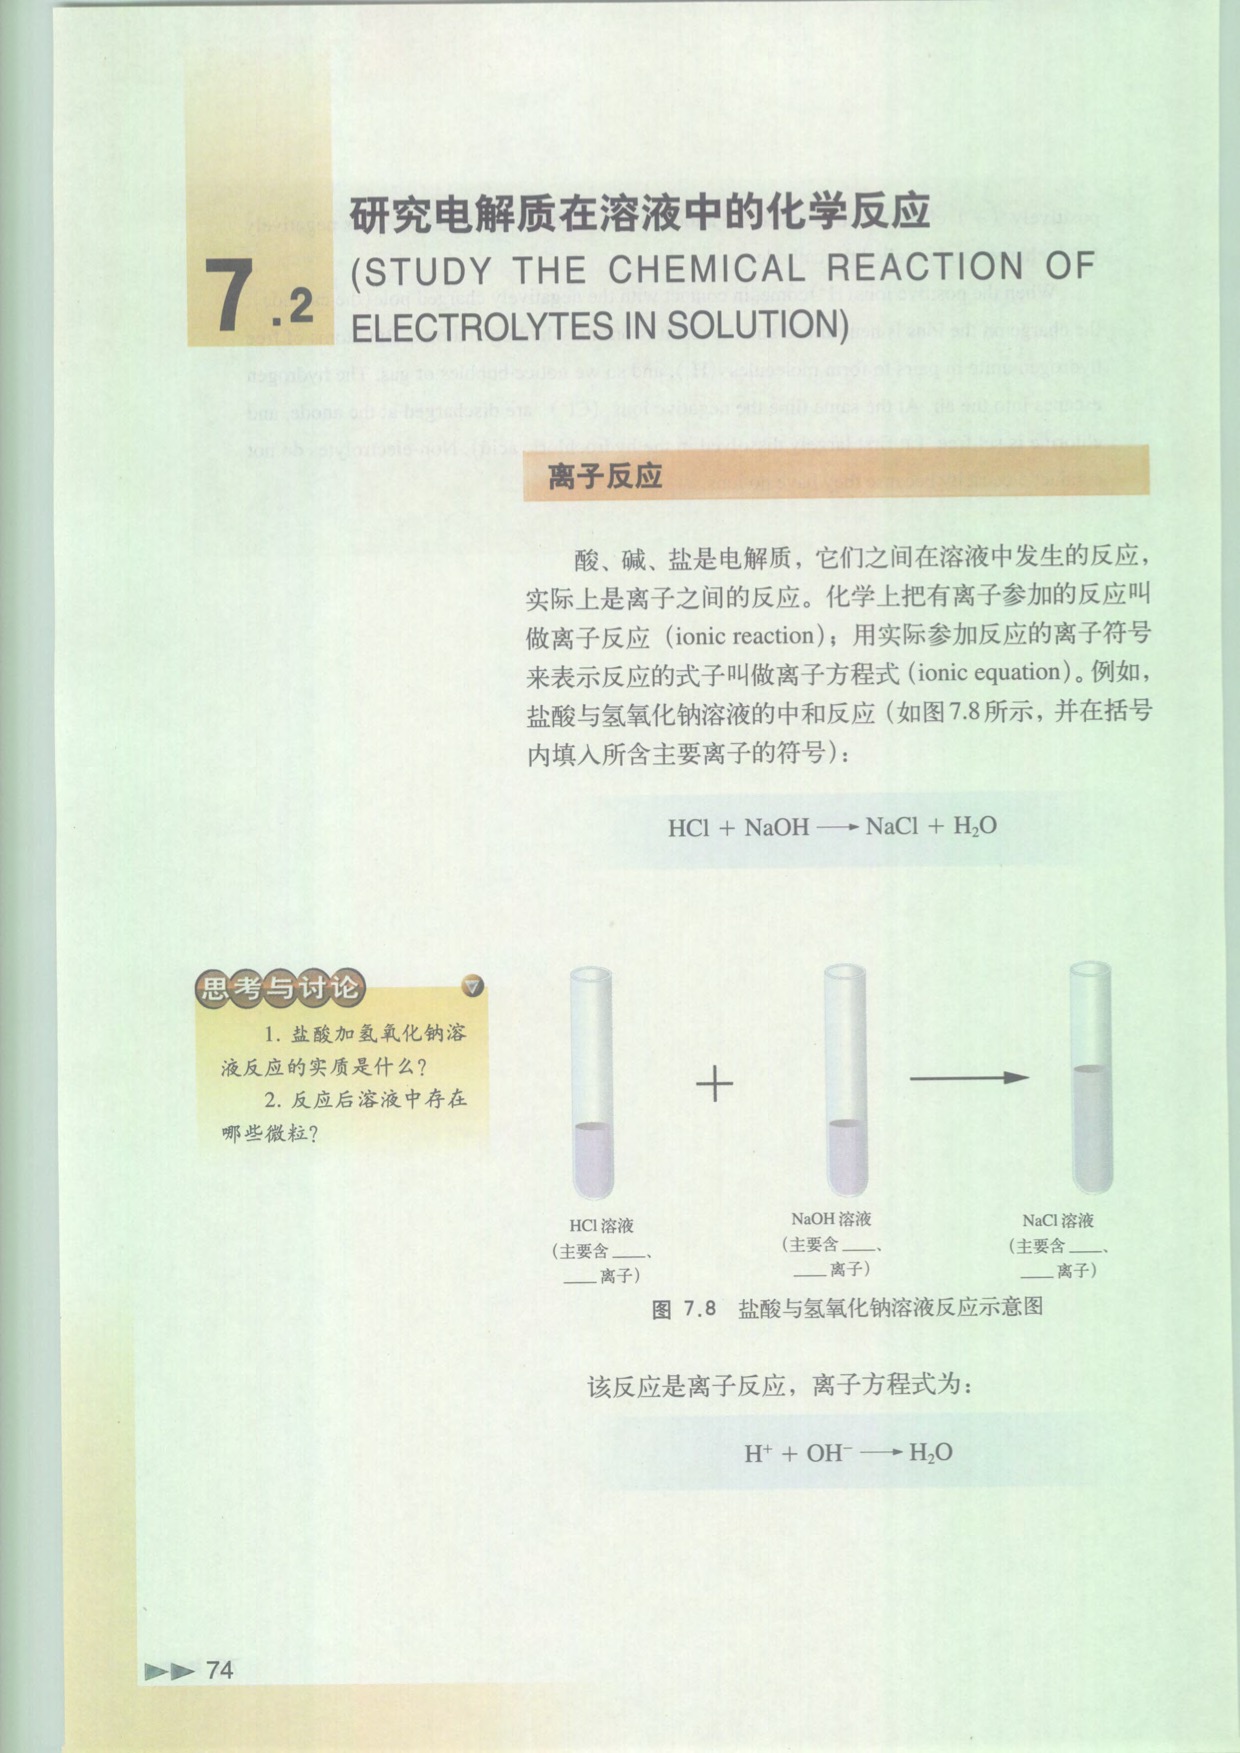 「7」.2 研究电解质在溶液中的反应